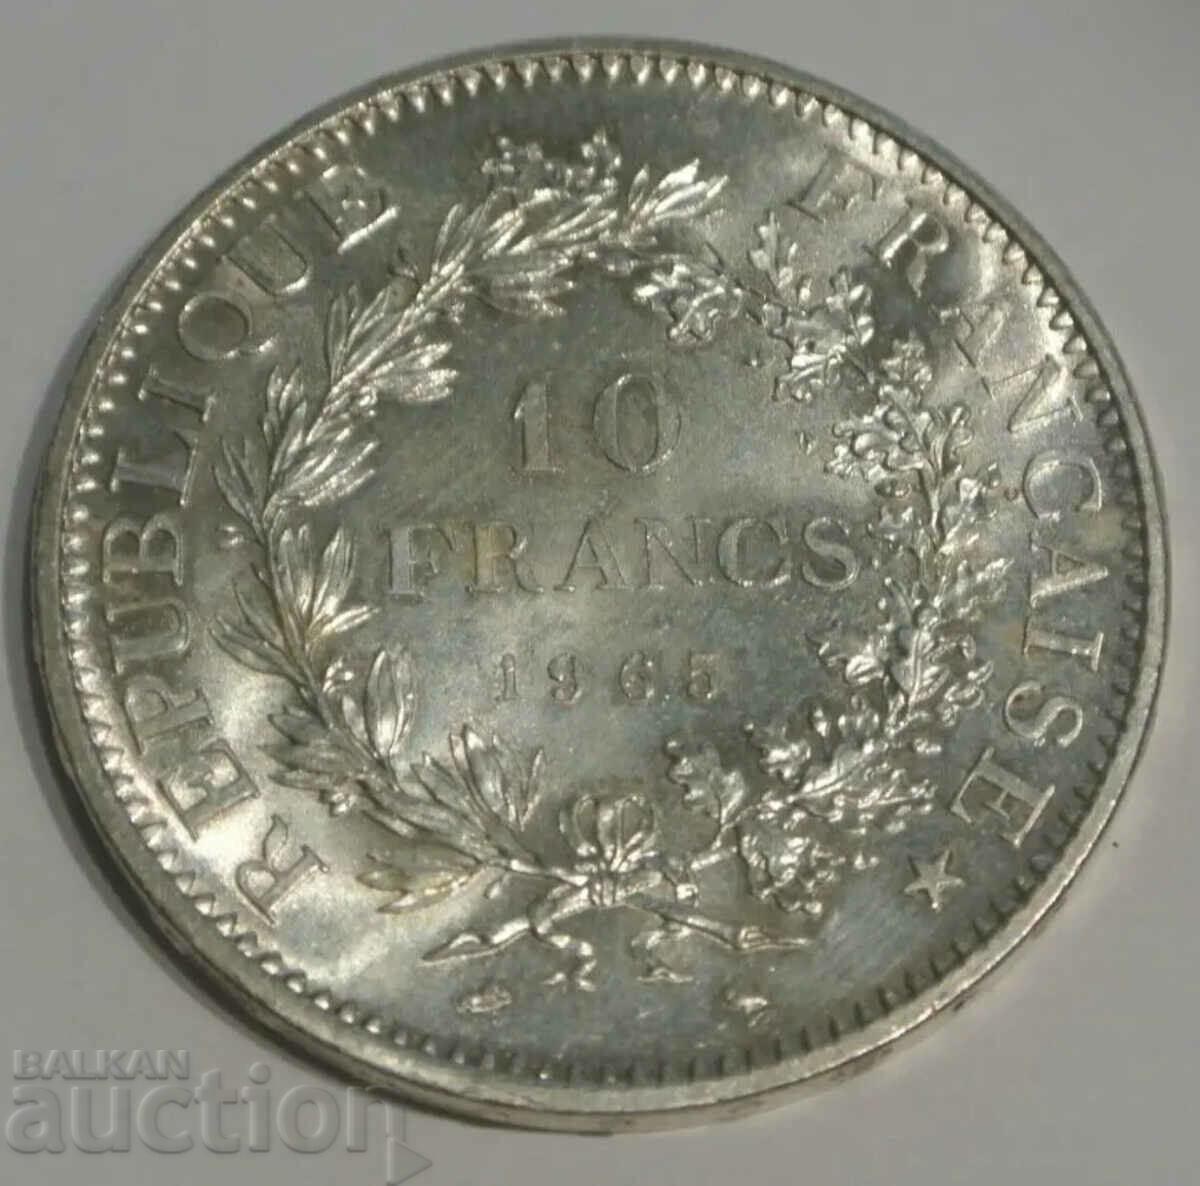 Γαλλία 10 φράγκα ασήμι 1965